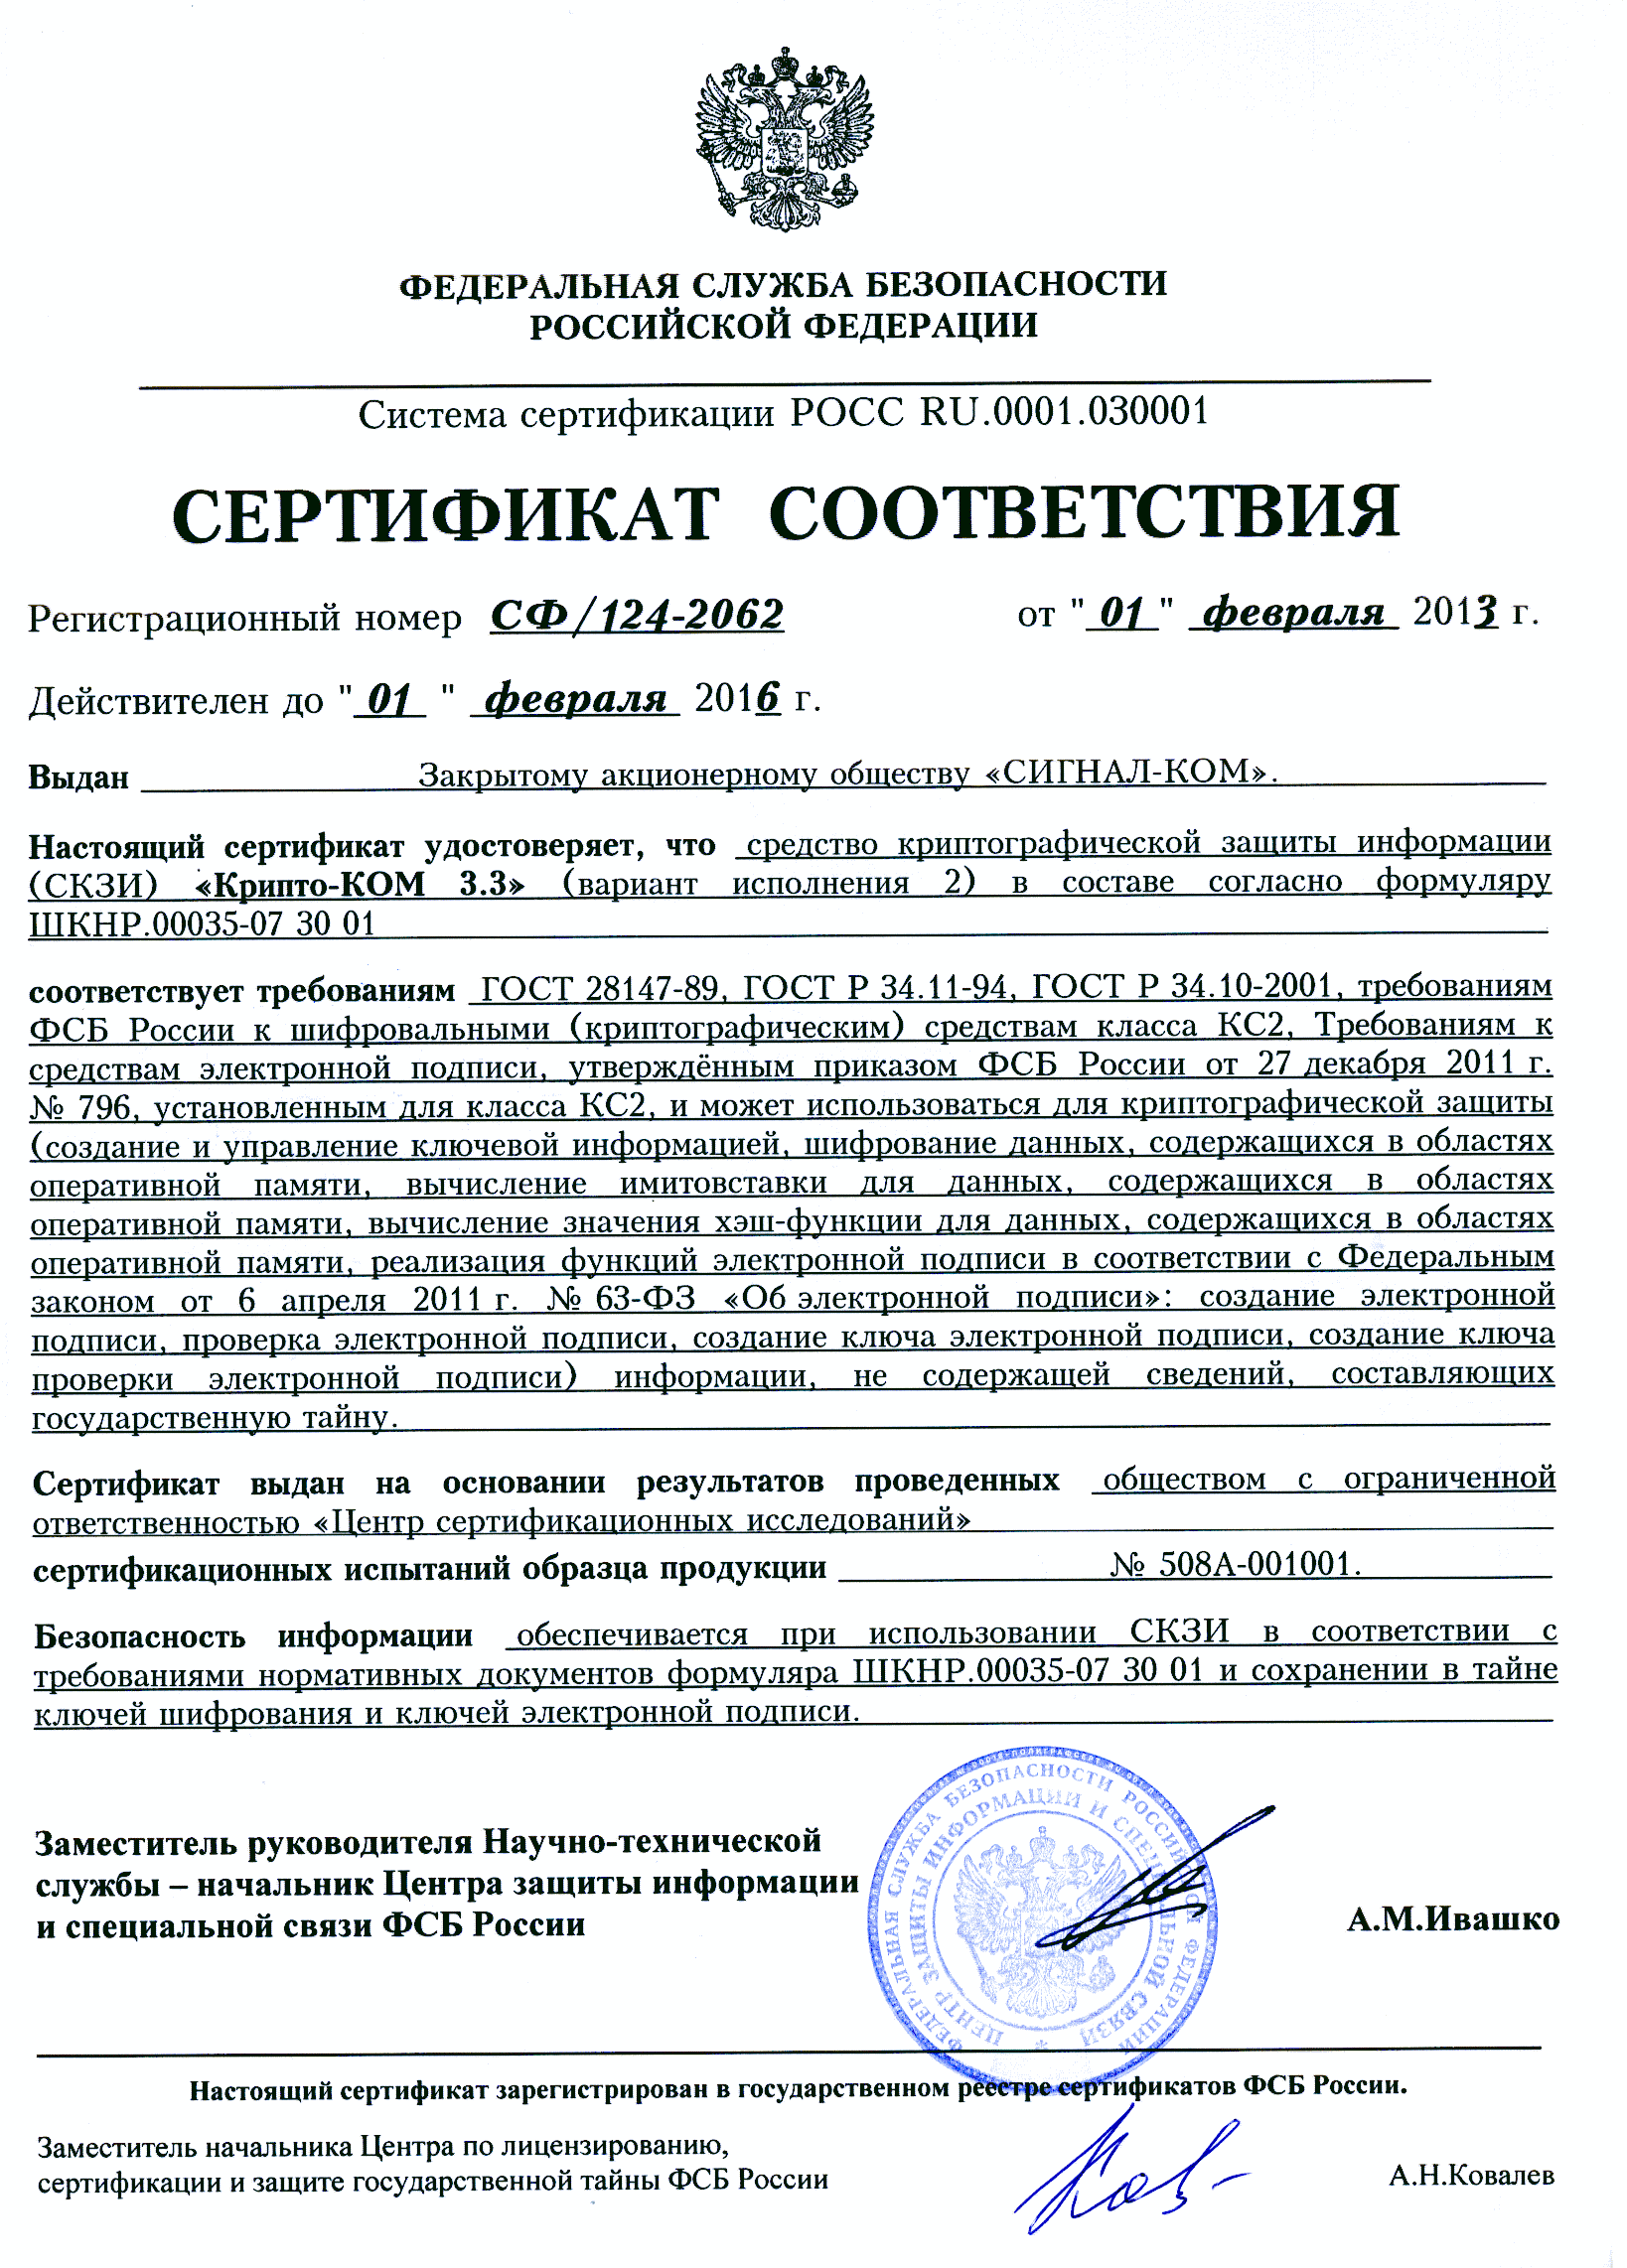 Vipnet кс2. СКЗИ “Форос 2” СФ/124-3911.